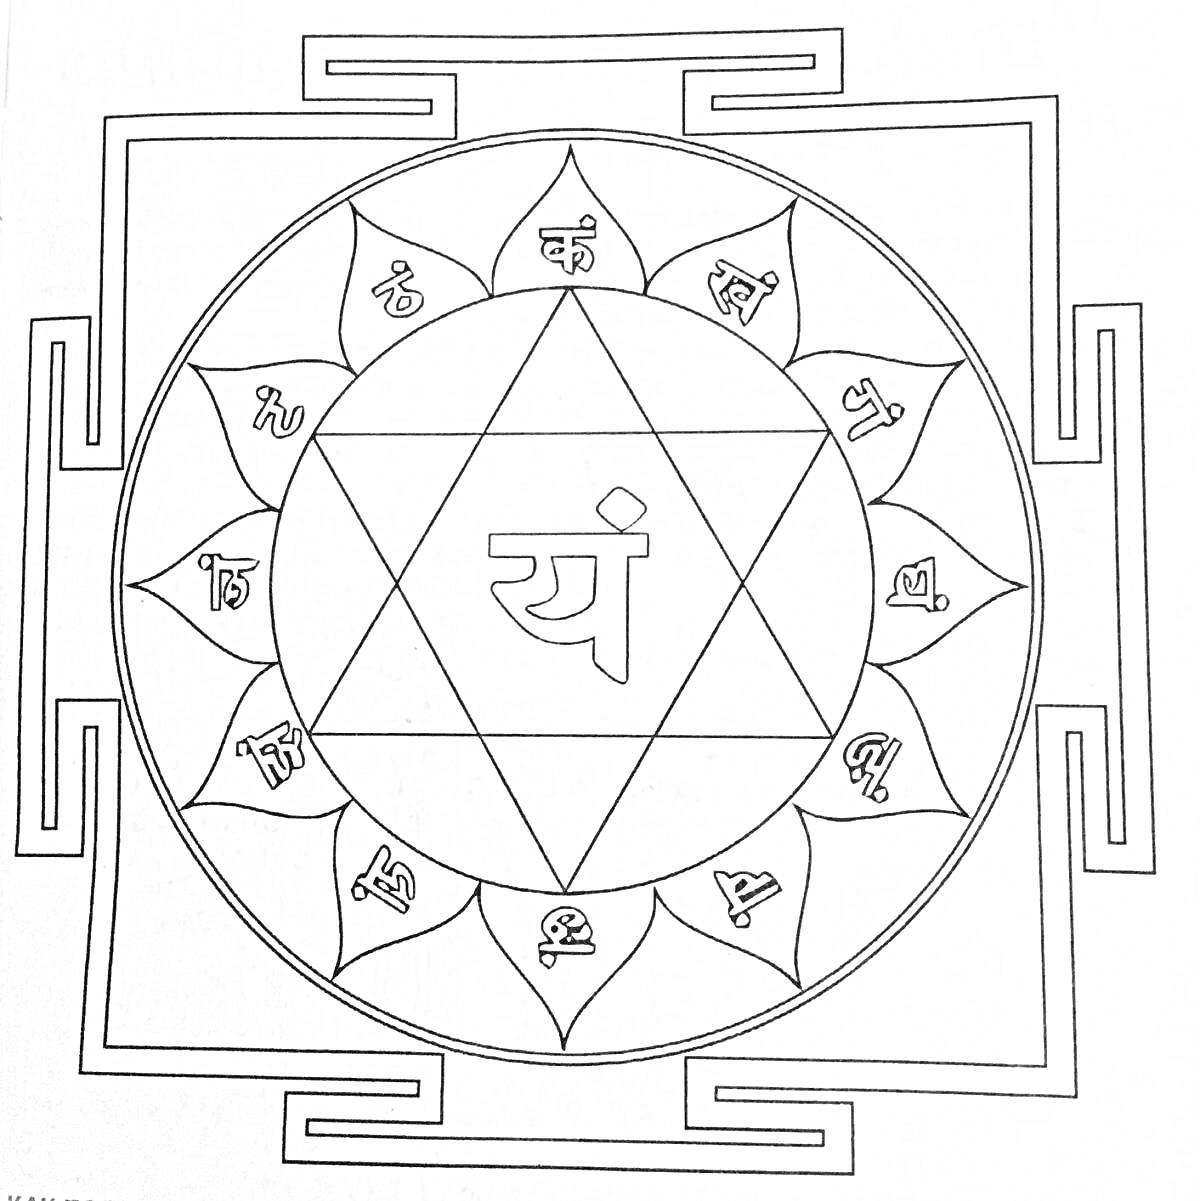 Раскраска Янтра с центральным символом, содержащая шесть окружностей с знаками, окруженная двойной внешней квадратной рамкой, включающей восемь внешних выступающих квадратных элементов